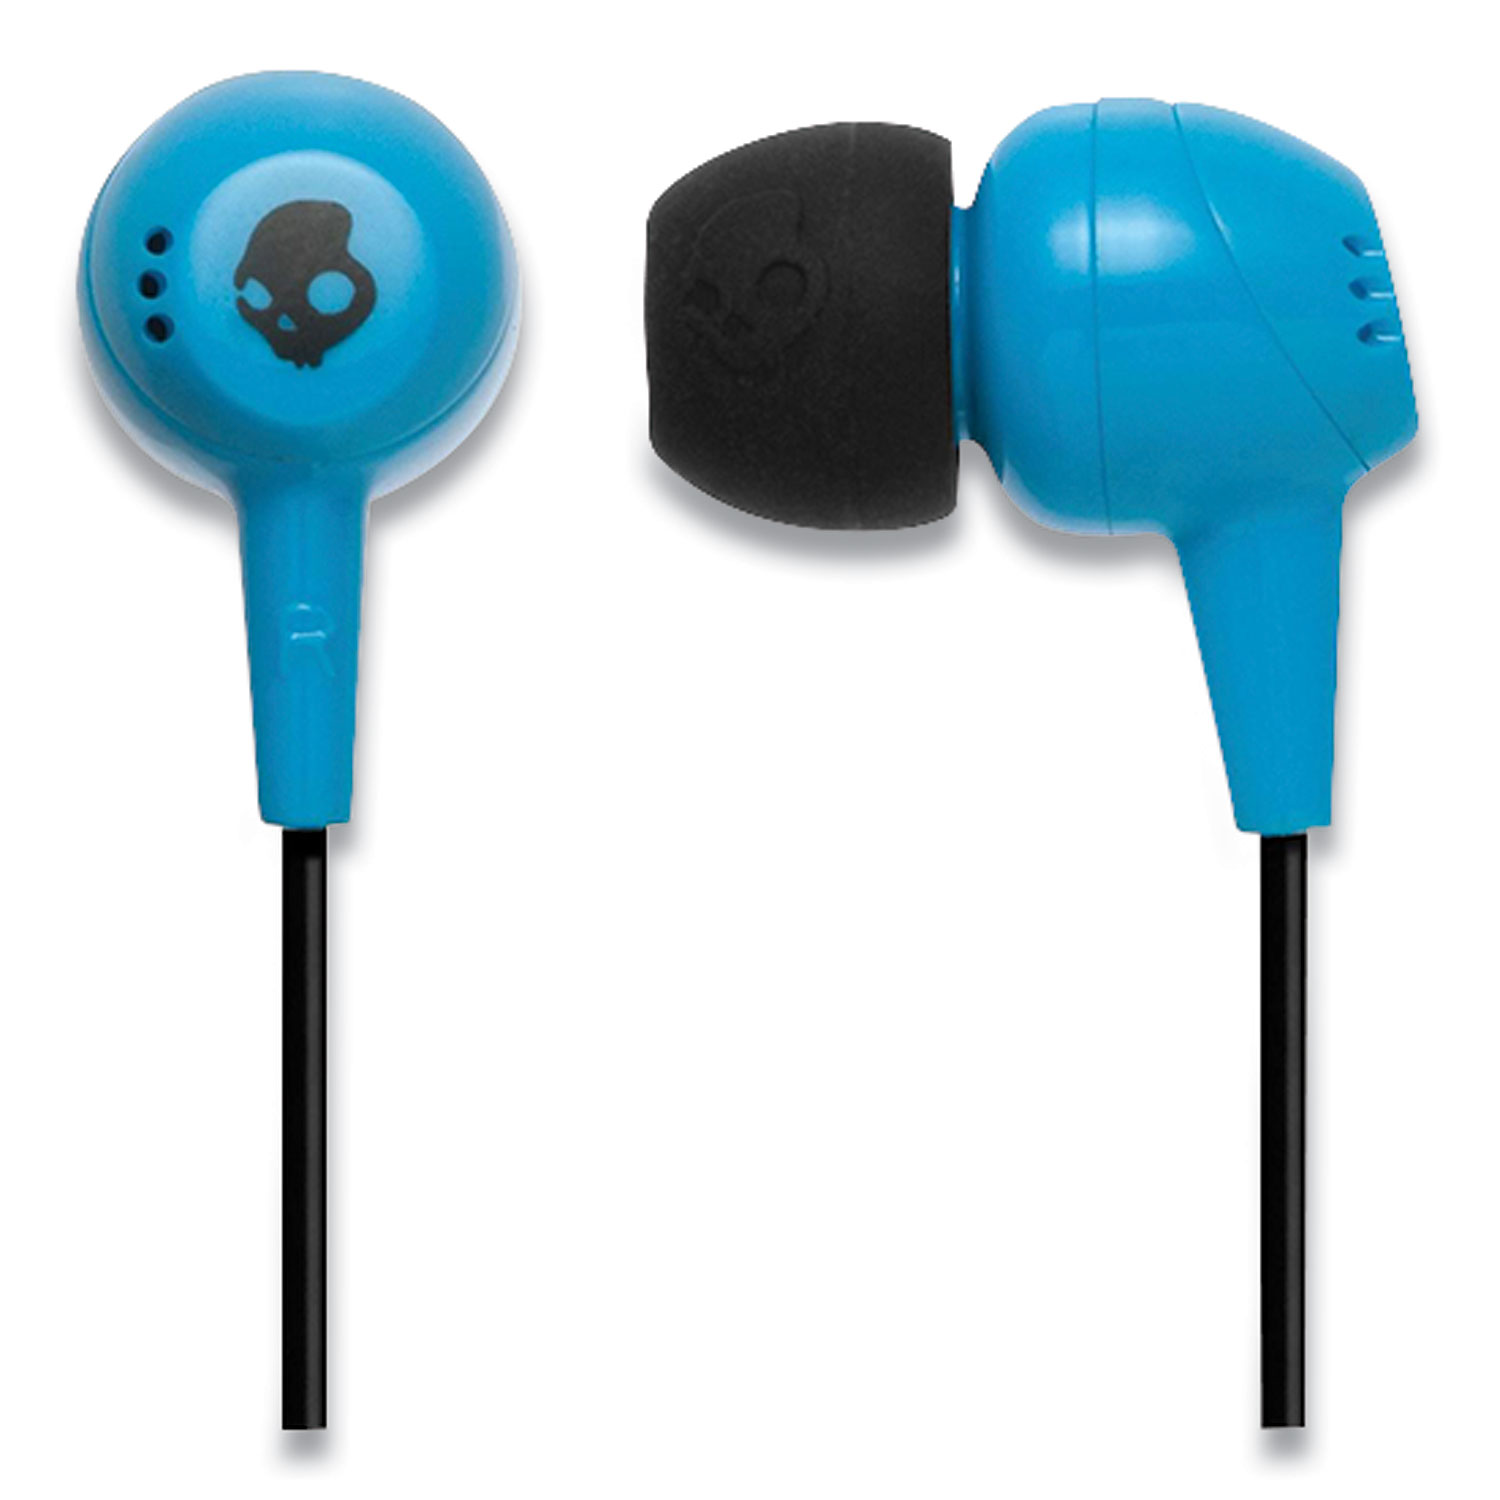  Skullcandy S2DUDZ-012 Jib In-Ear Headphones, Blue (SKA321118) 